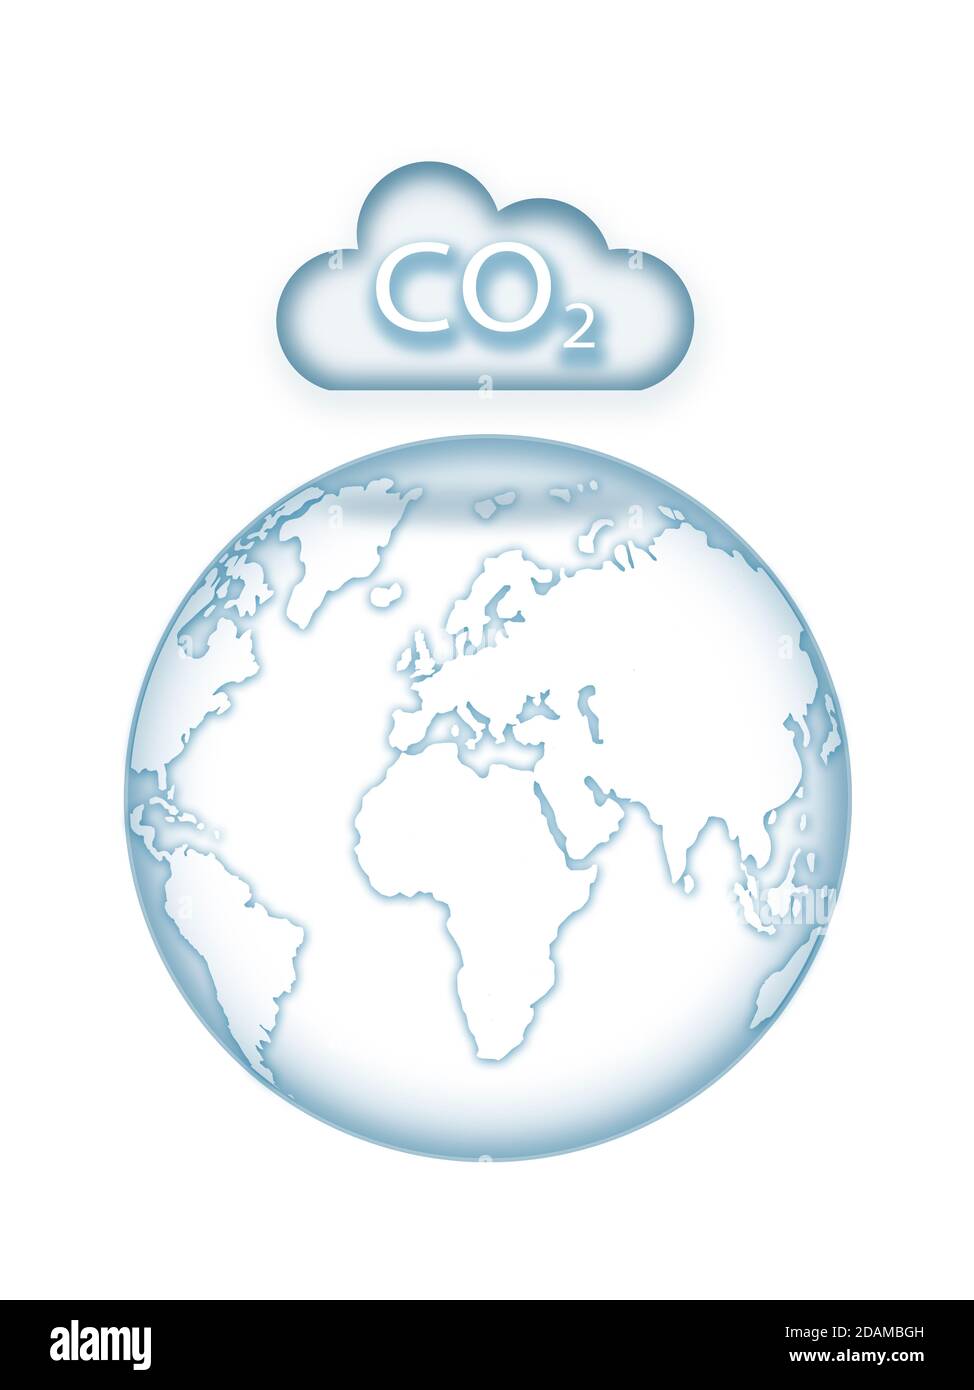 Erde im Schatten einer Kohlenstoffwolke, Illustration. Stockfoto